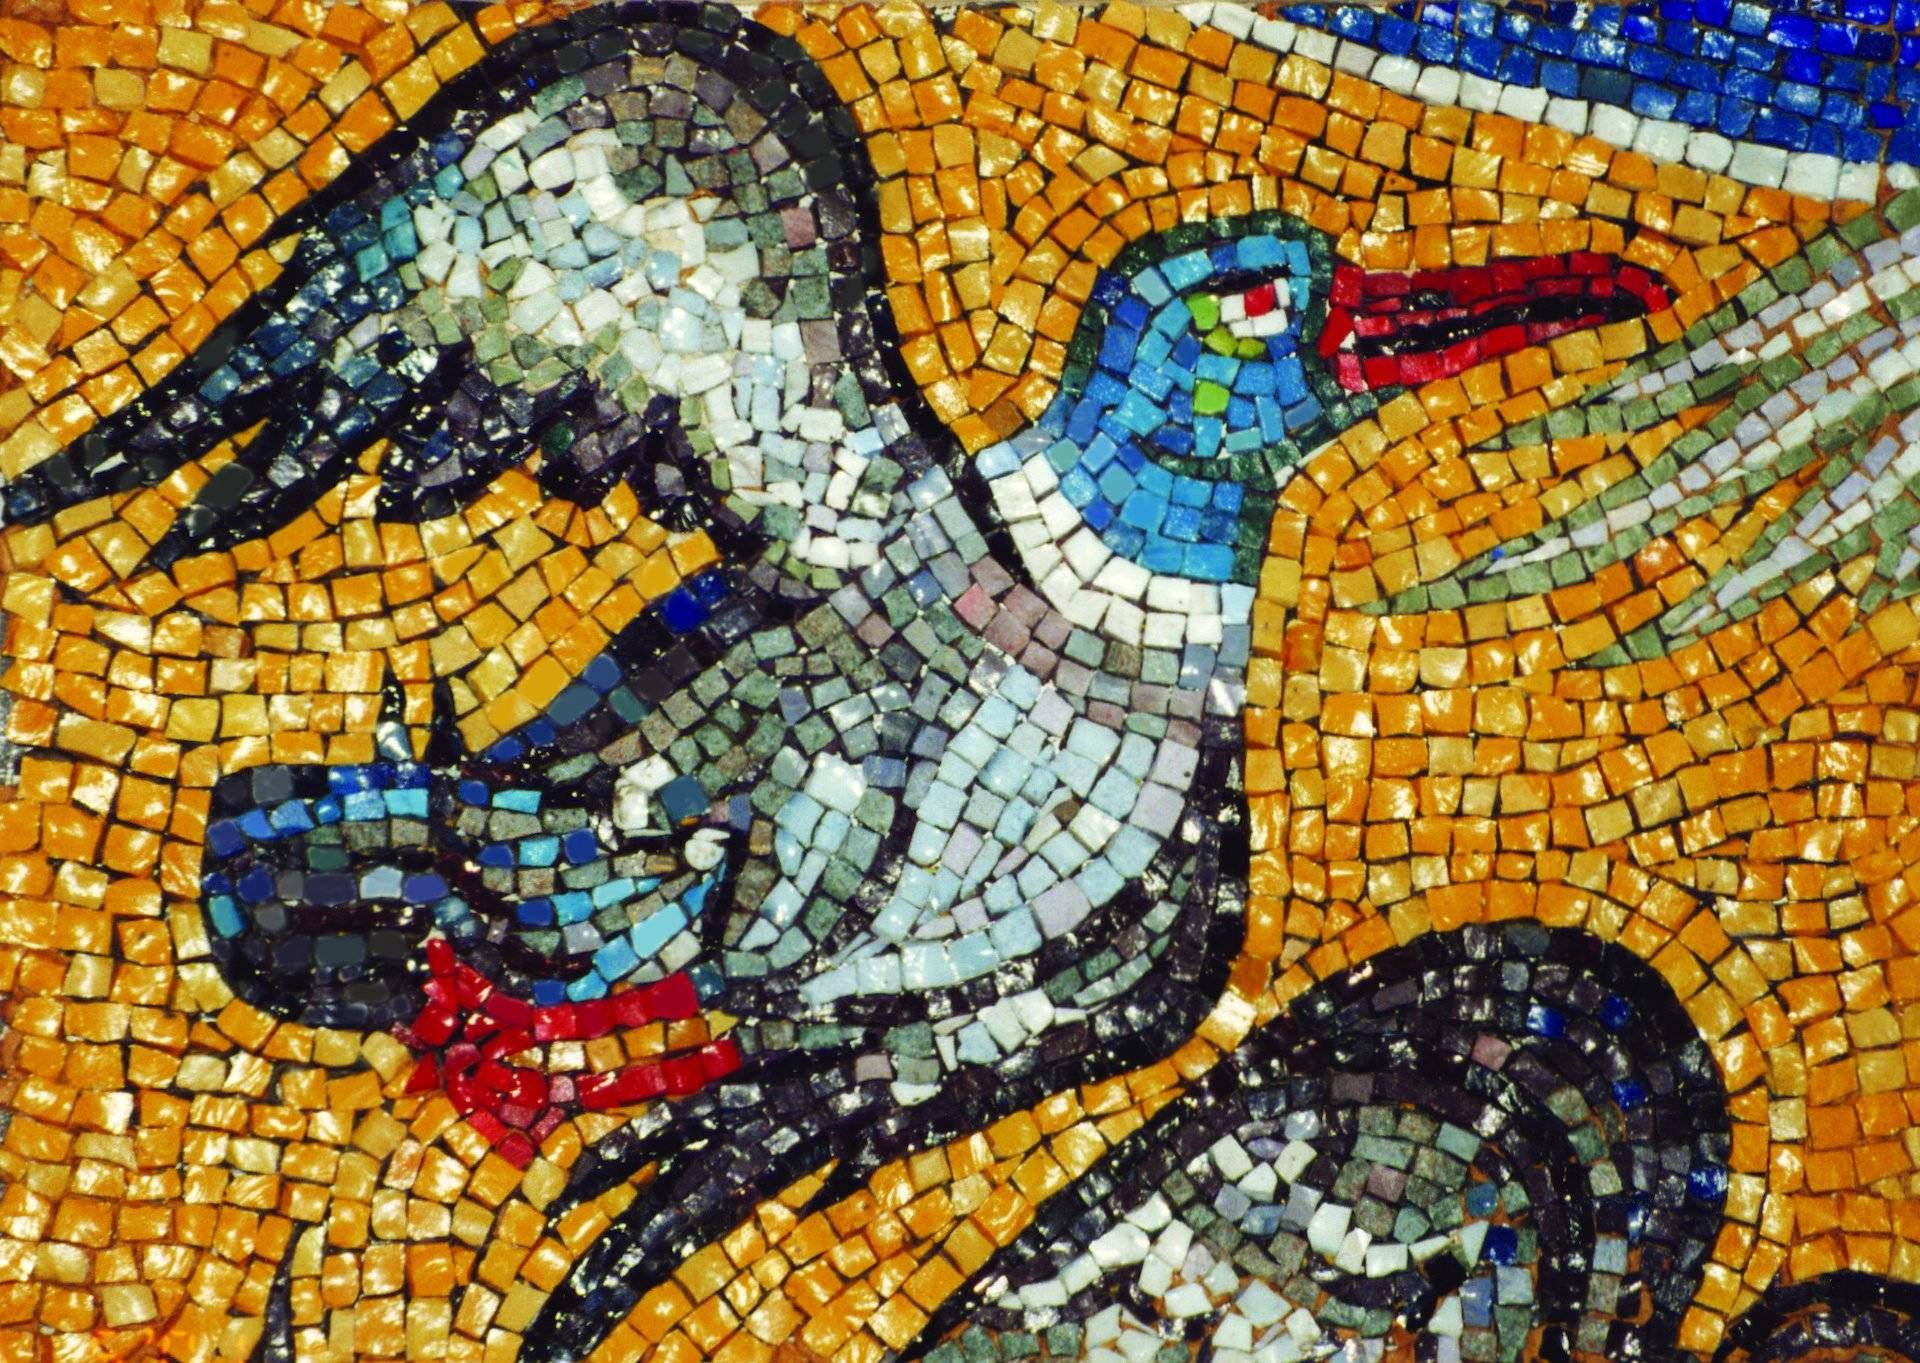 История древней мозаики: византийская, флорентийская, римская, венецианская